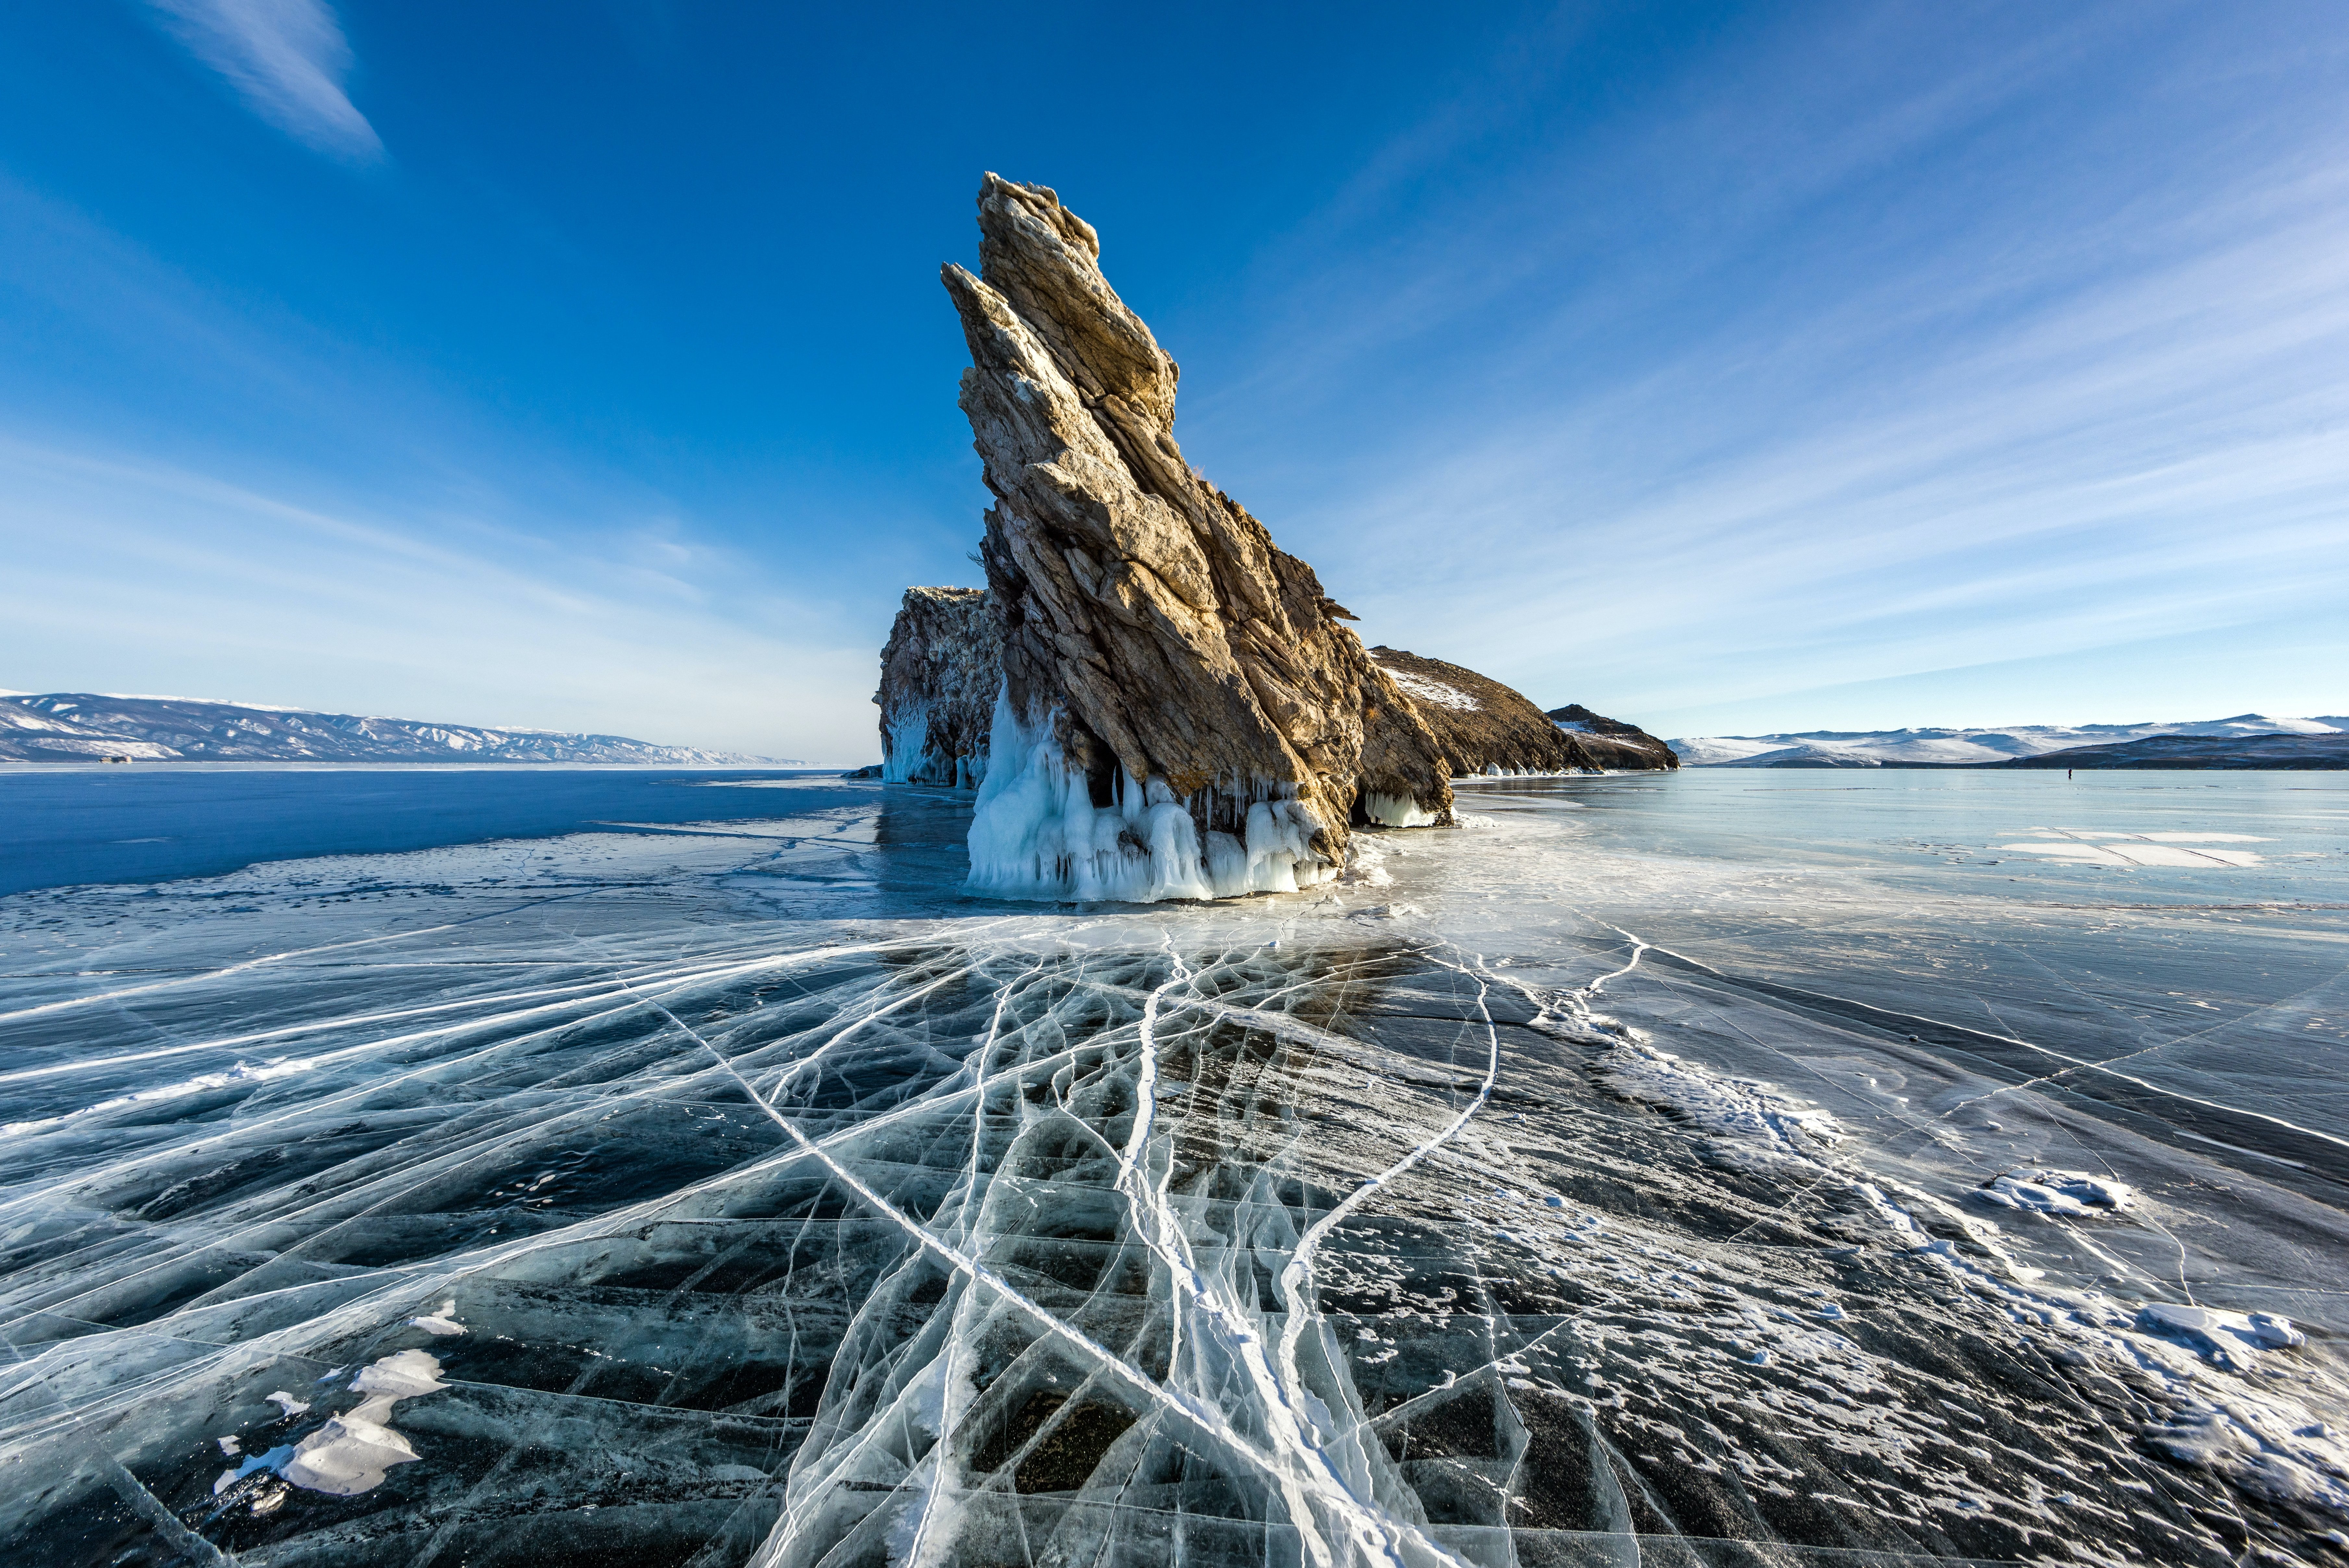 Misteris que segur que no saps sobre el llac Baikal